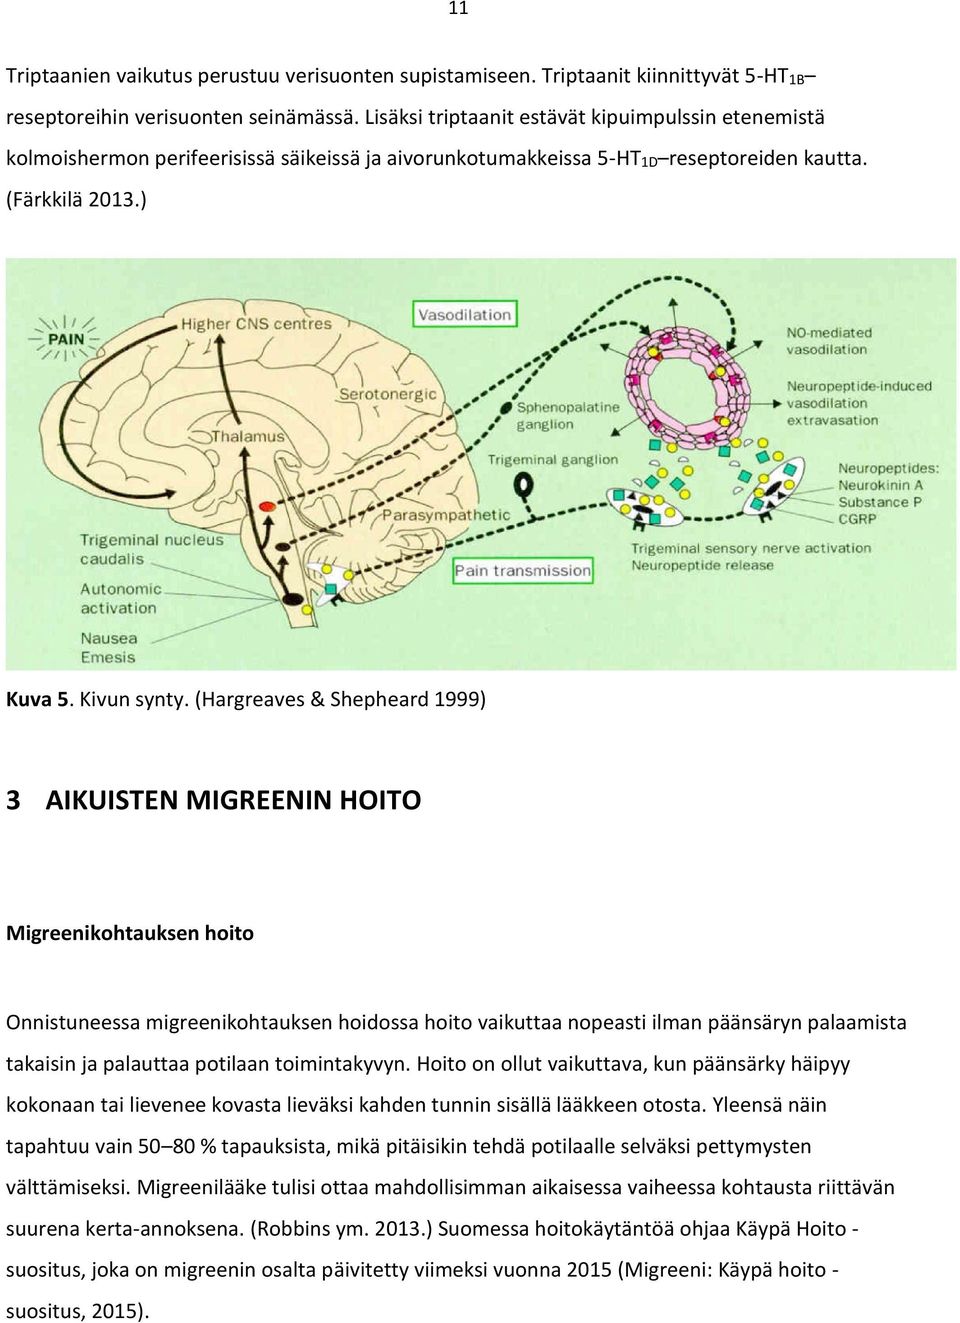 (Hargreaves & Shepheard 1999) 3 AIKUISTEN MIGREENIN HOITO Migreenikohtauksen hoito Onnistuneessa migreenikohtauksen hoidossa hoito vaikuttaa nopeasti ilman päänsäryn palaamista takaisin ja palauttaa